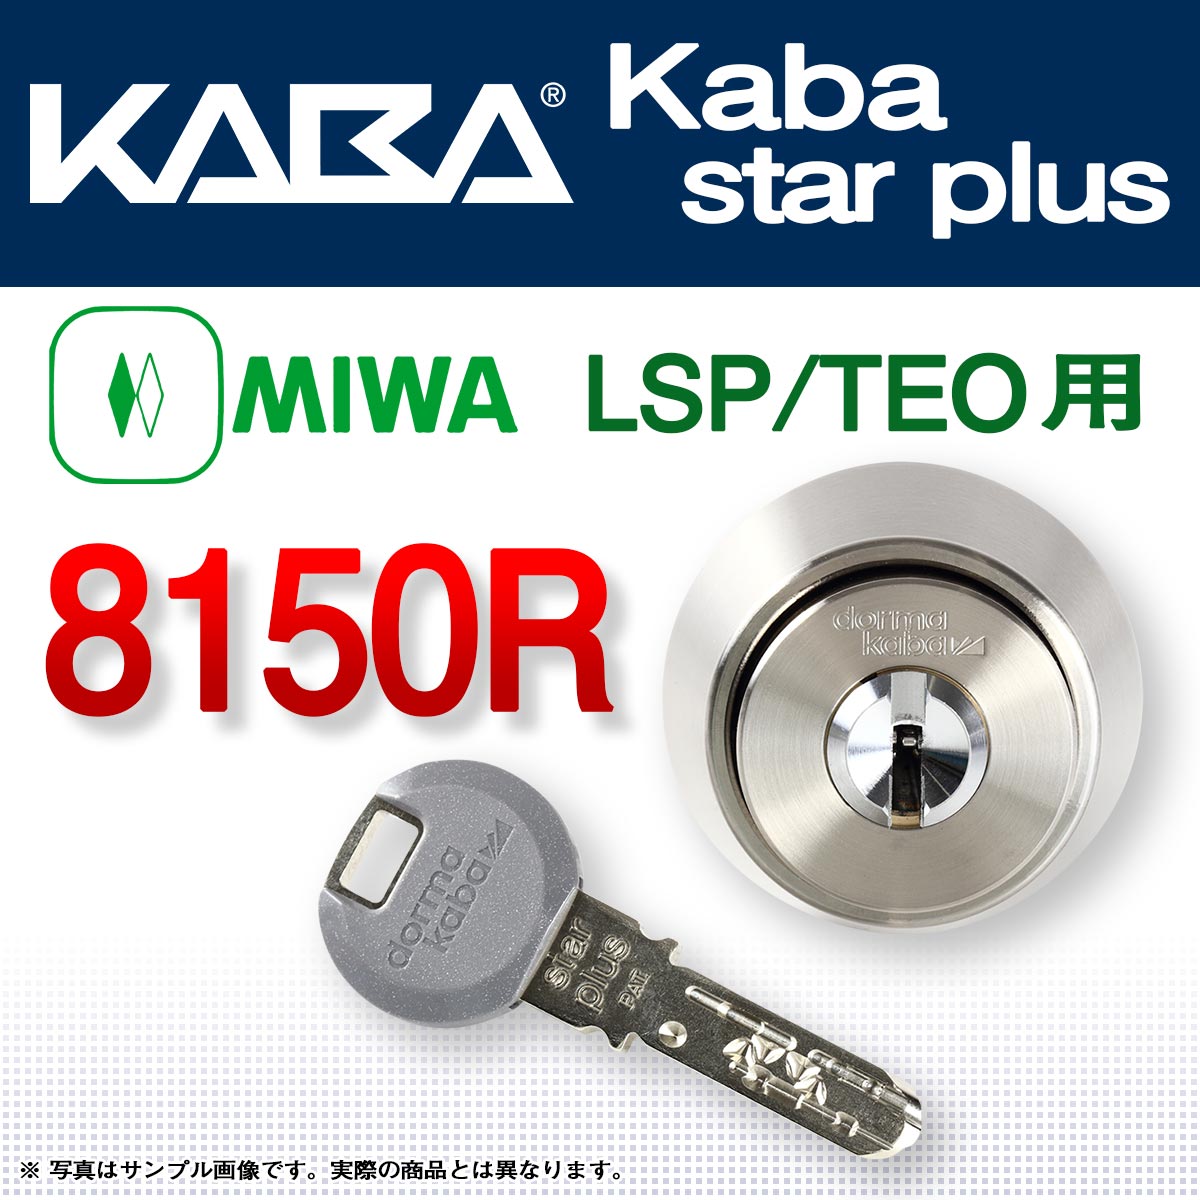 10065円 超特価 Kaba star plus カバスタープラス 8155 MIWA LZ1 LZ2 美和ロック 交換用 防犯 ピッキング対策 シリンダー